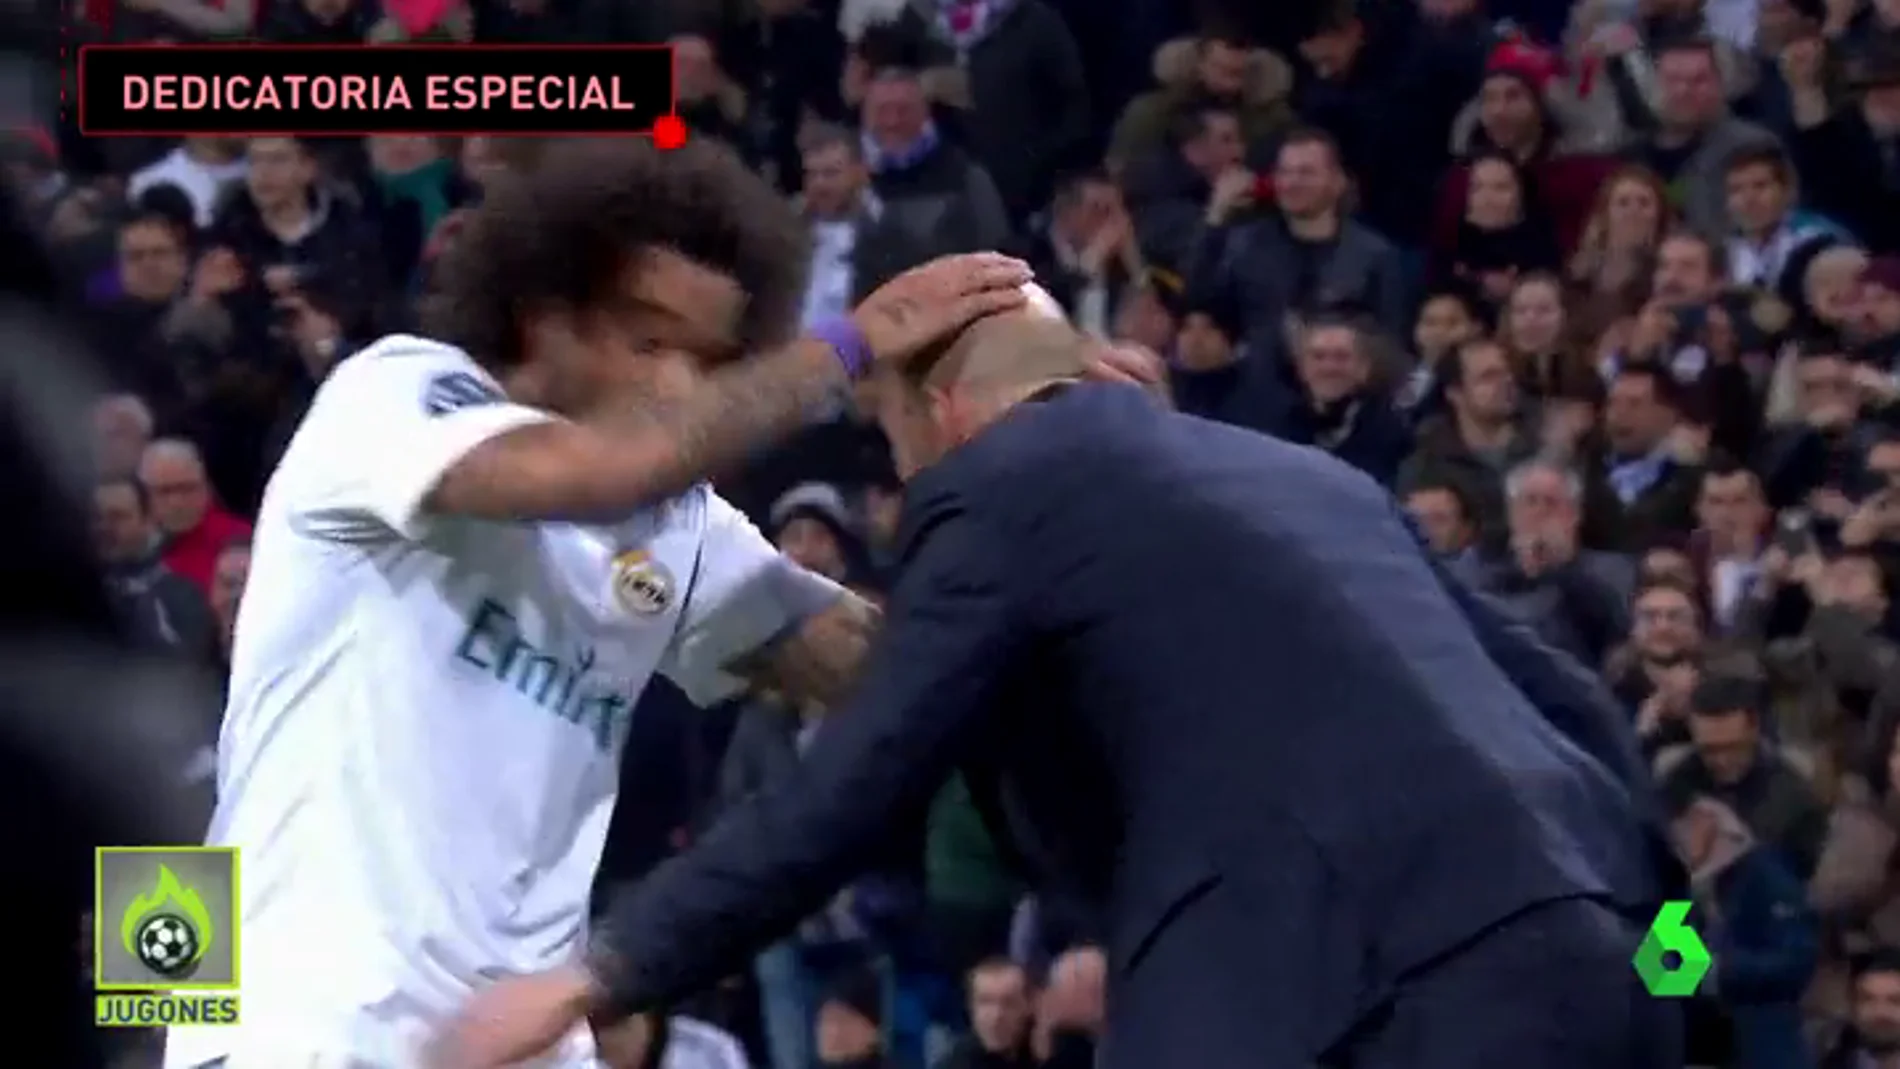 La plantilla del Real Madrid arropa a Zidane tras la victoria ante el PSG: "Estamos a muerte con él"